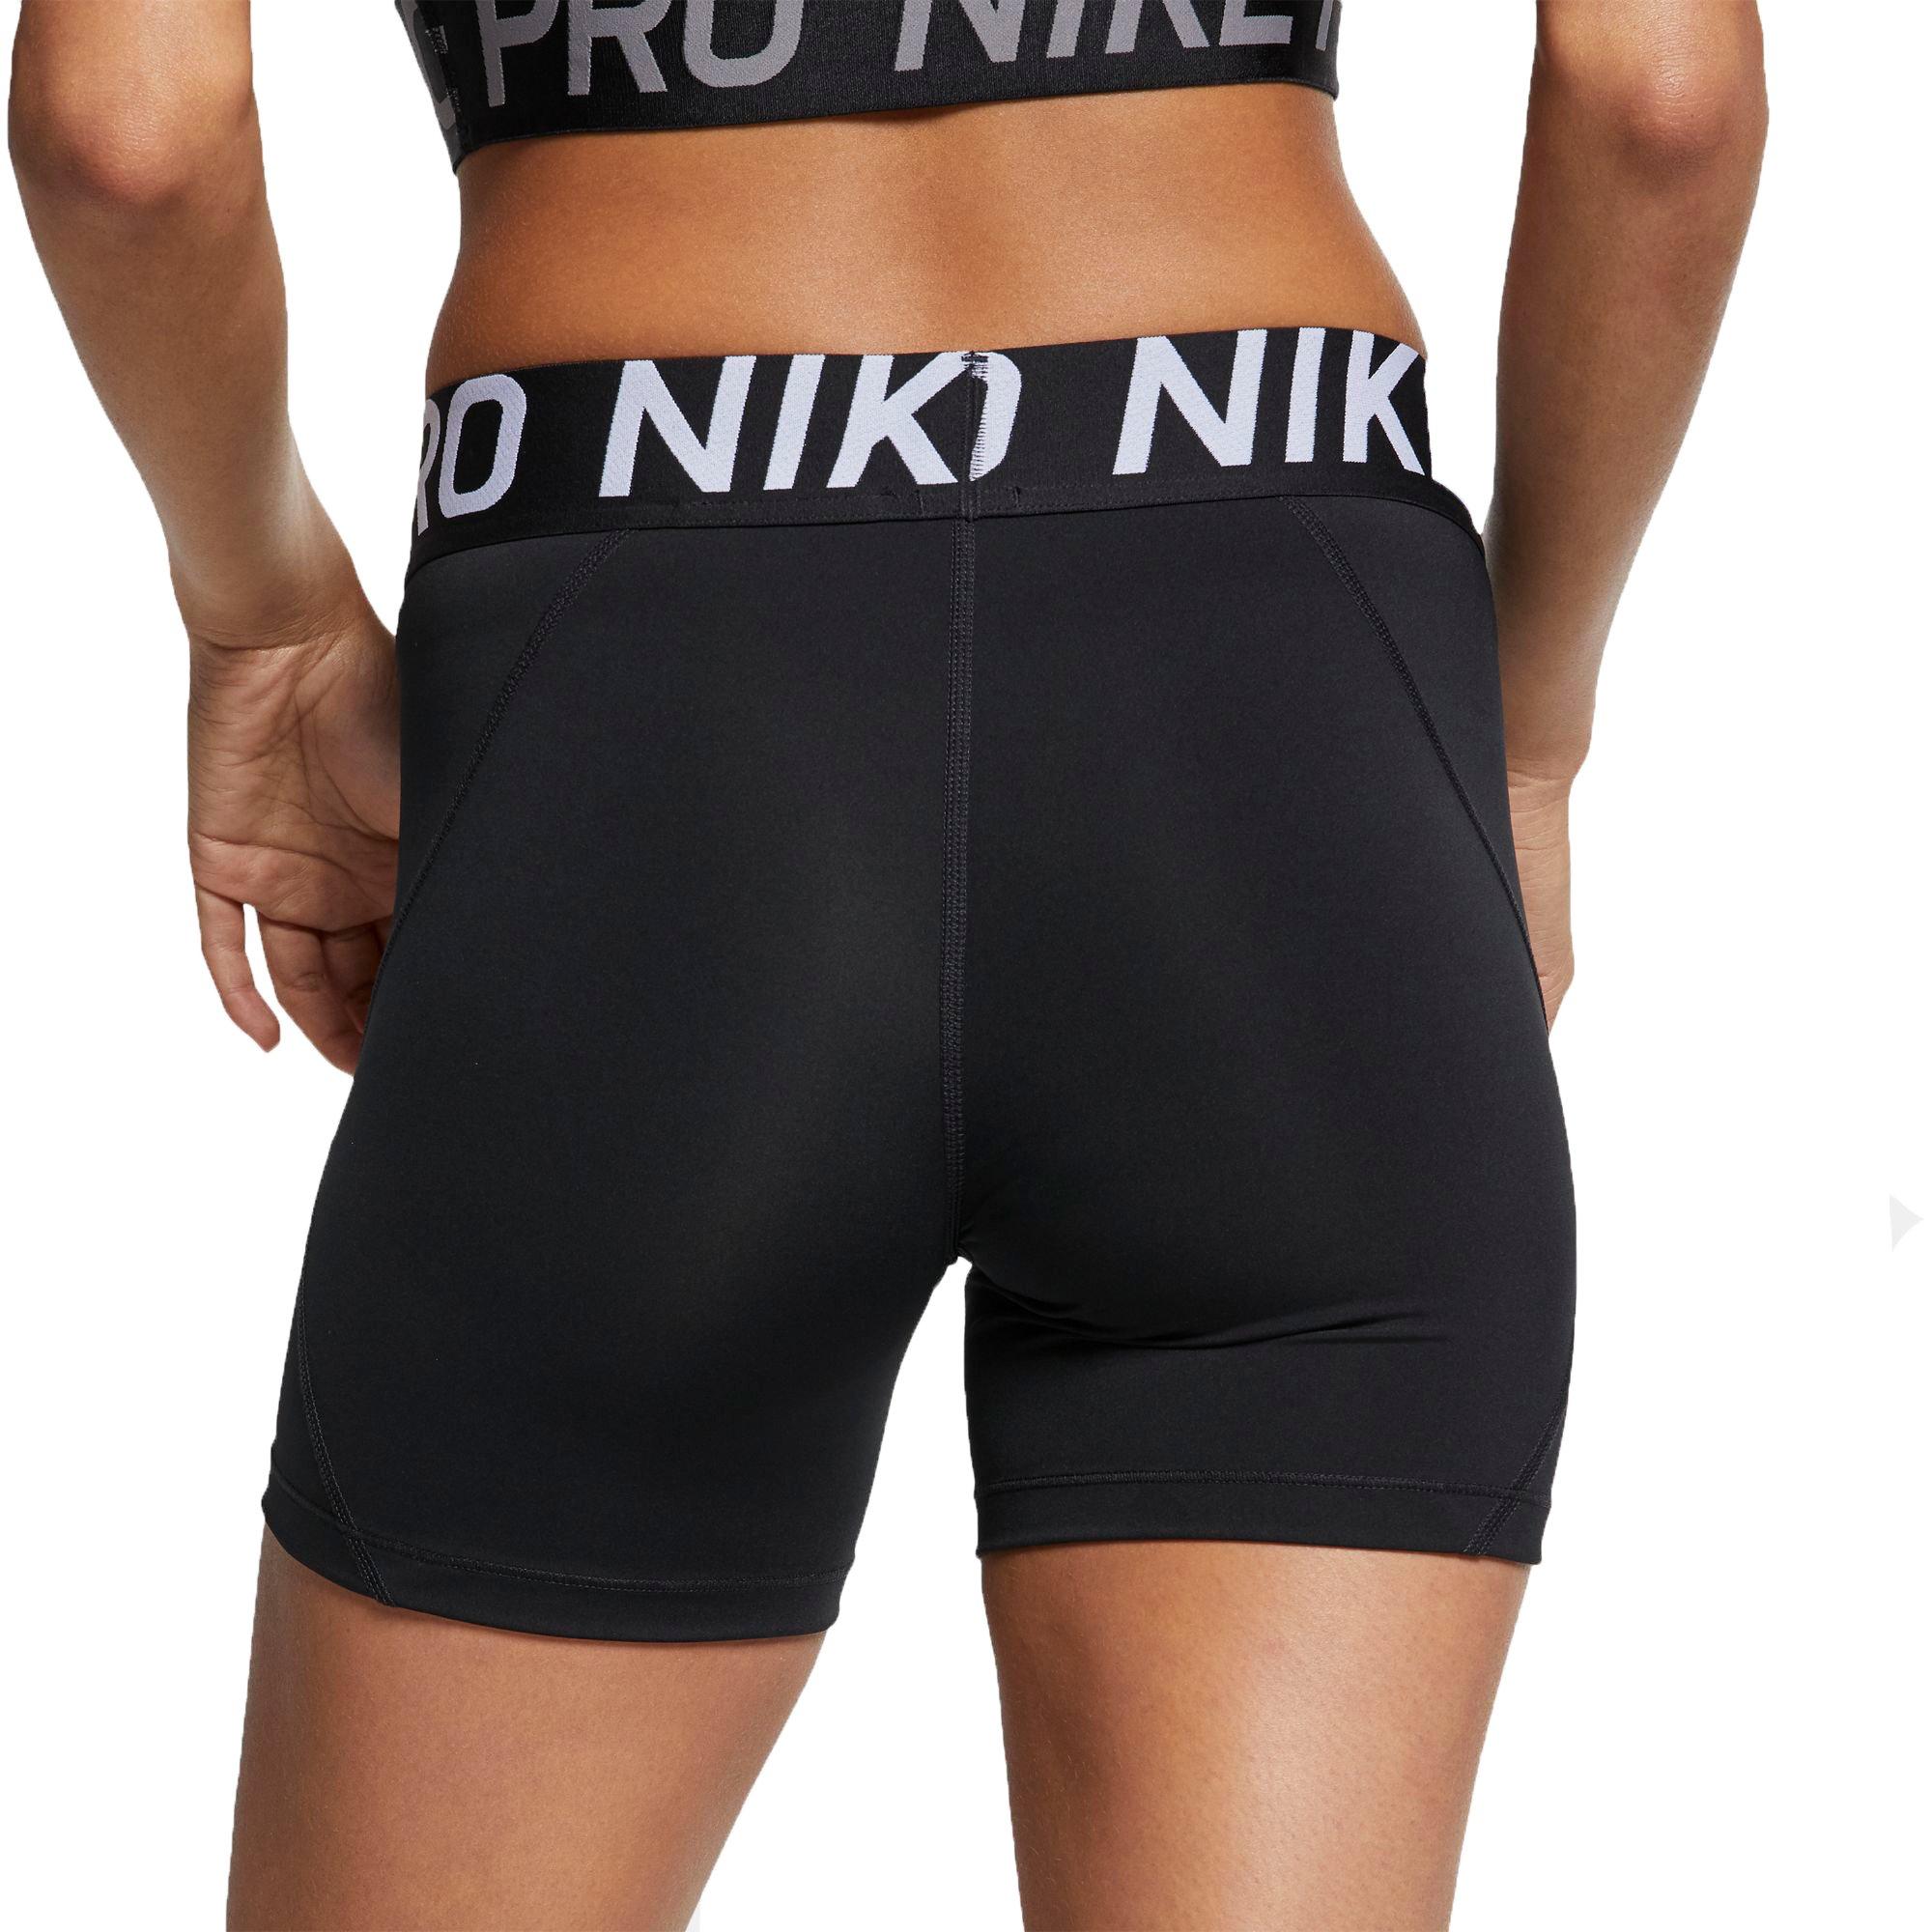 nike pro shorts 5 inch